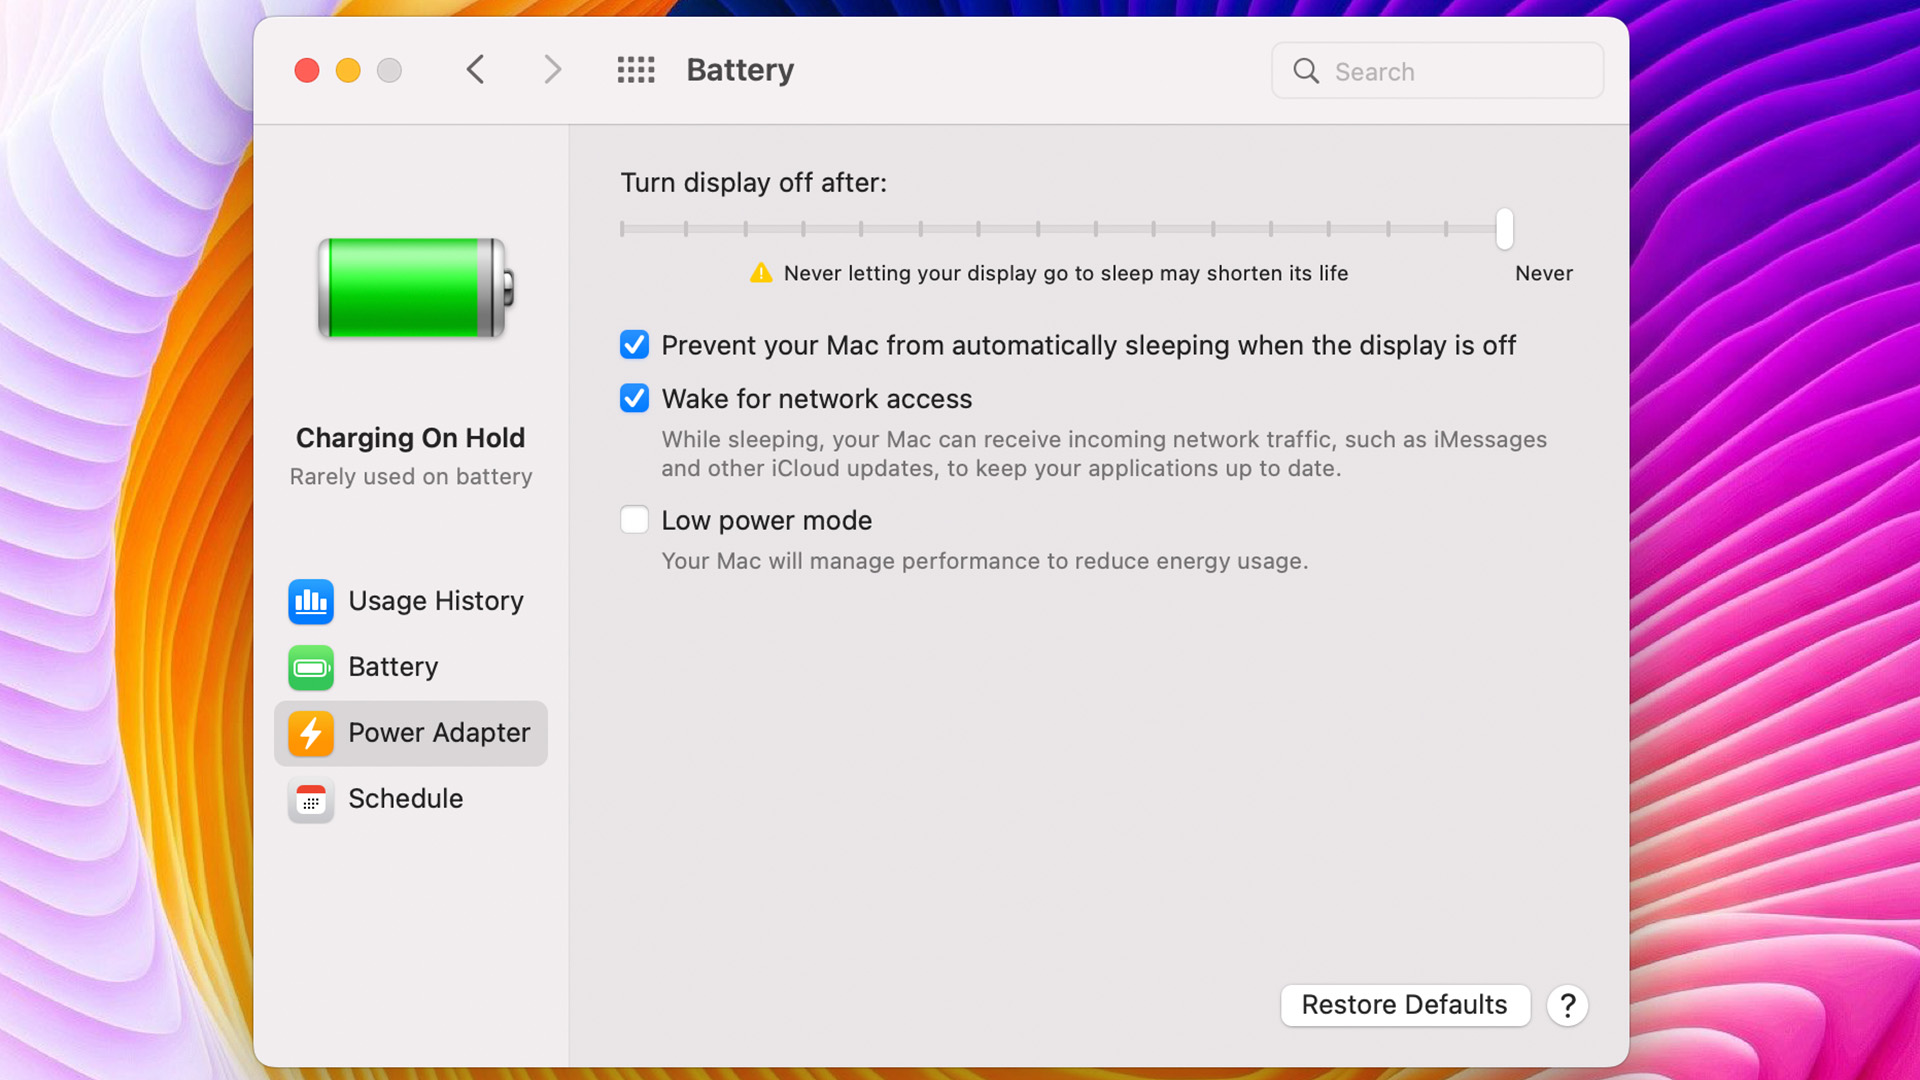 Macbook Battery Power Adapter settings